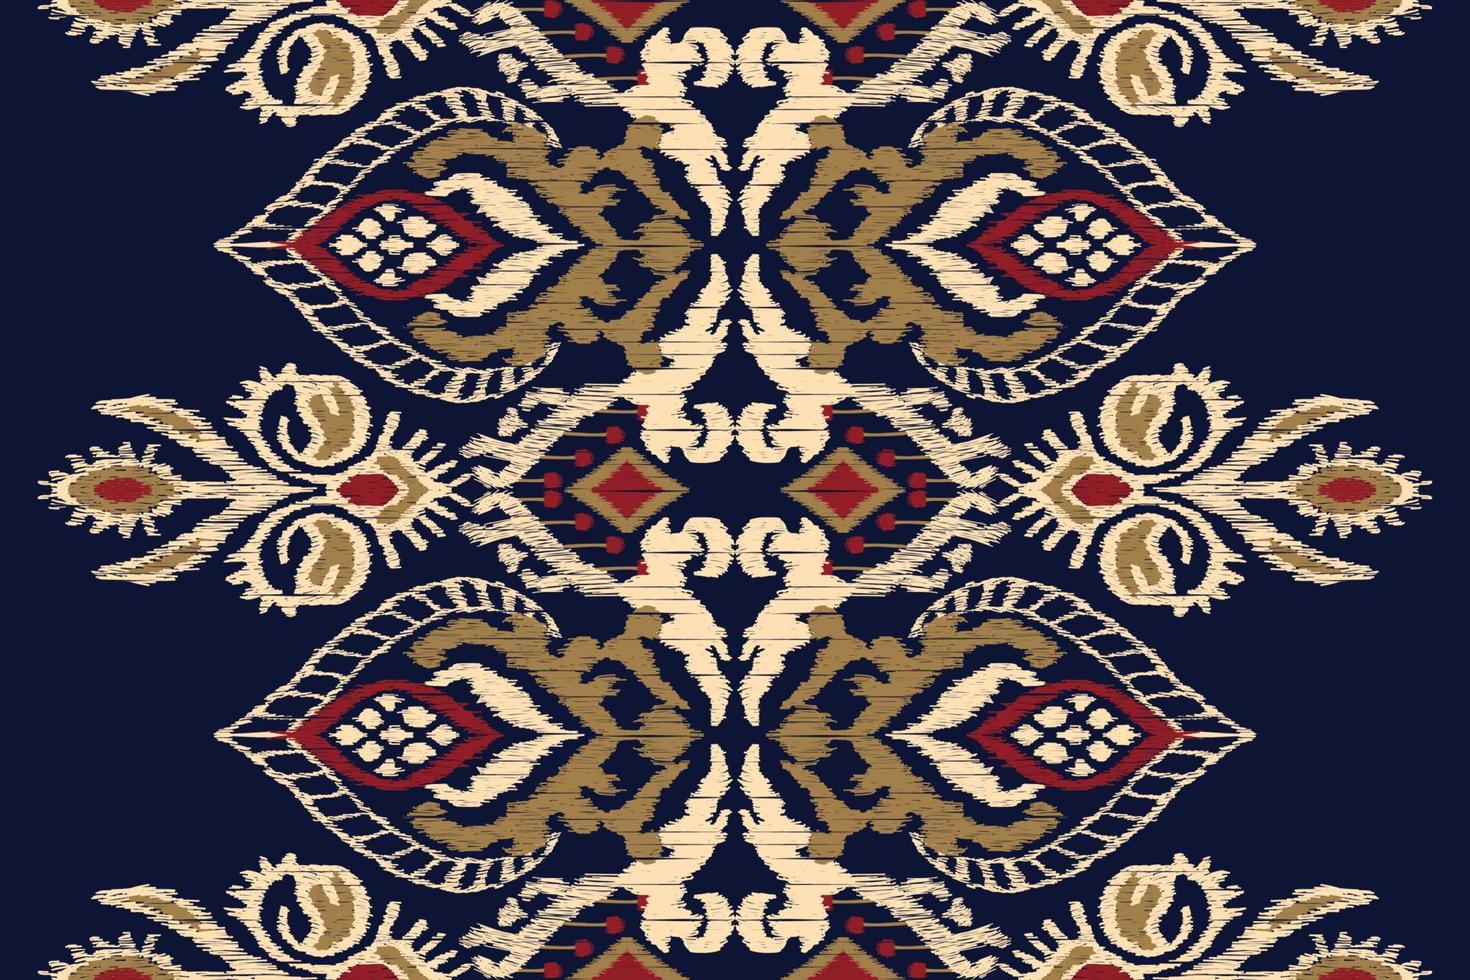 ikat blommig paisley broderi på Marin blå bakgrund.geometrisk etnisk orientalisk mönster traditionell.aztec stil abstrakt vektor illustration.design för textur, tyg, kläder, inslagning, dekoration.